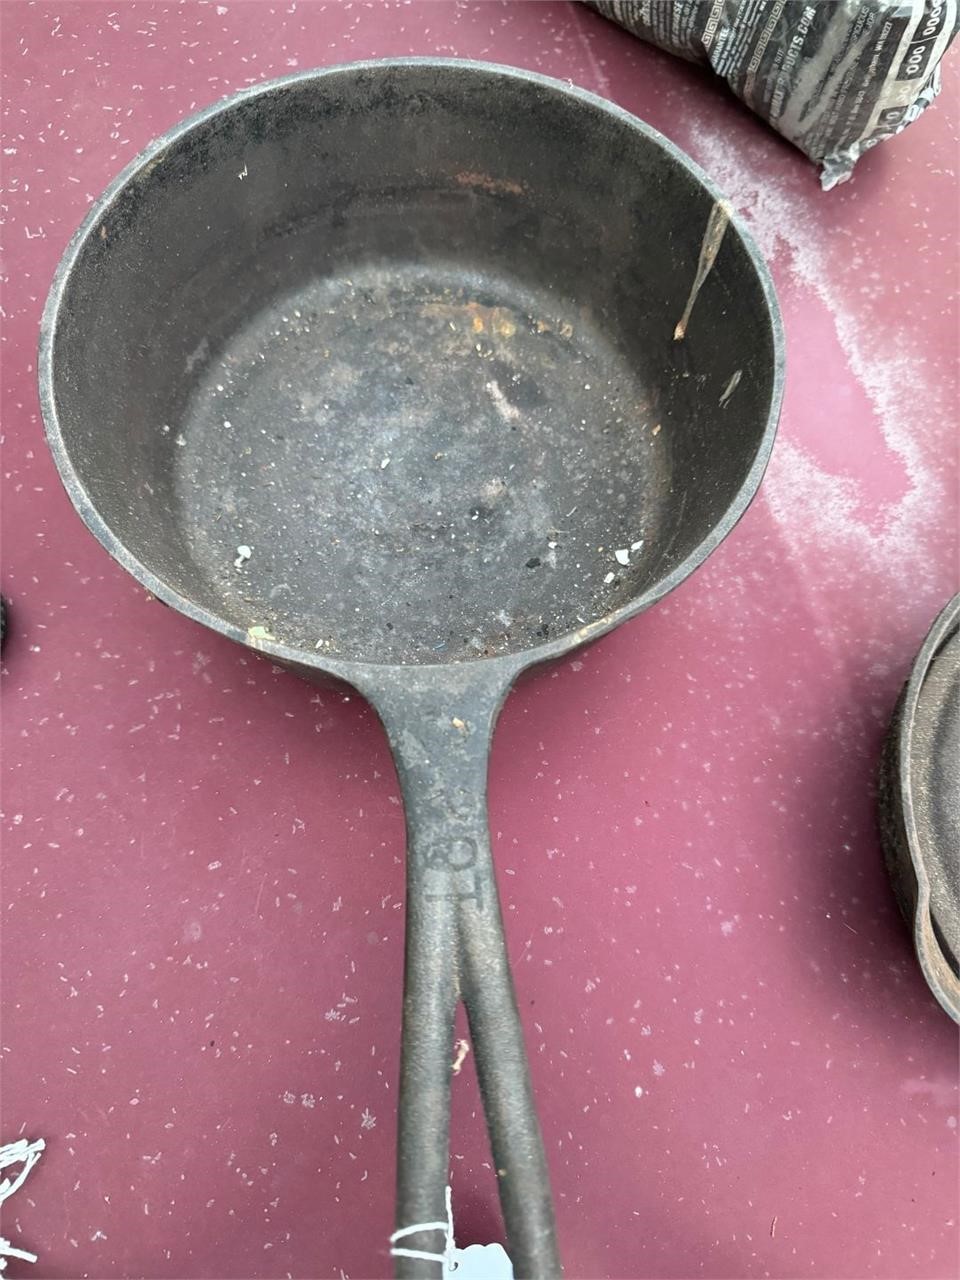 Cast iron pot- size 8 3/4